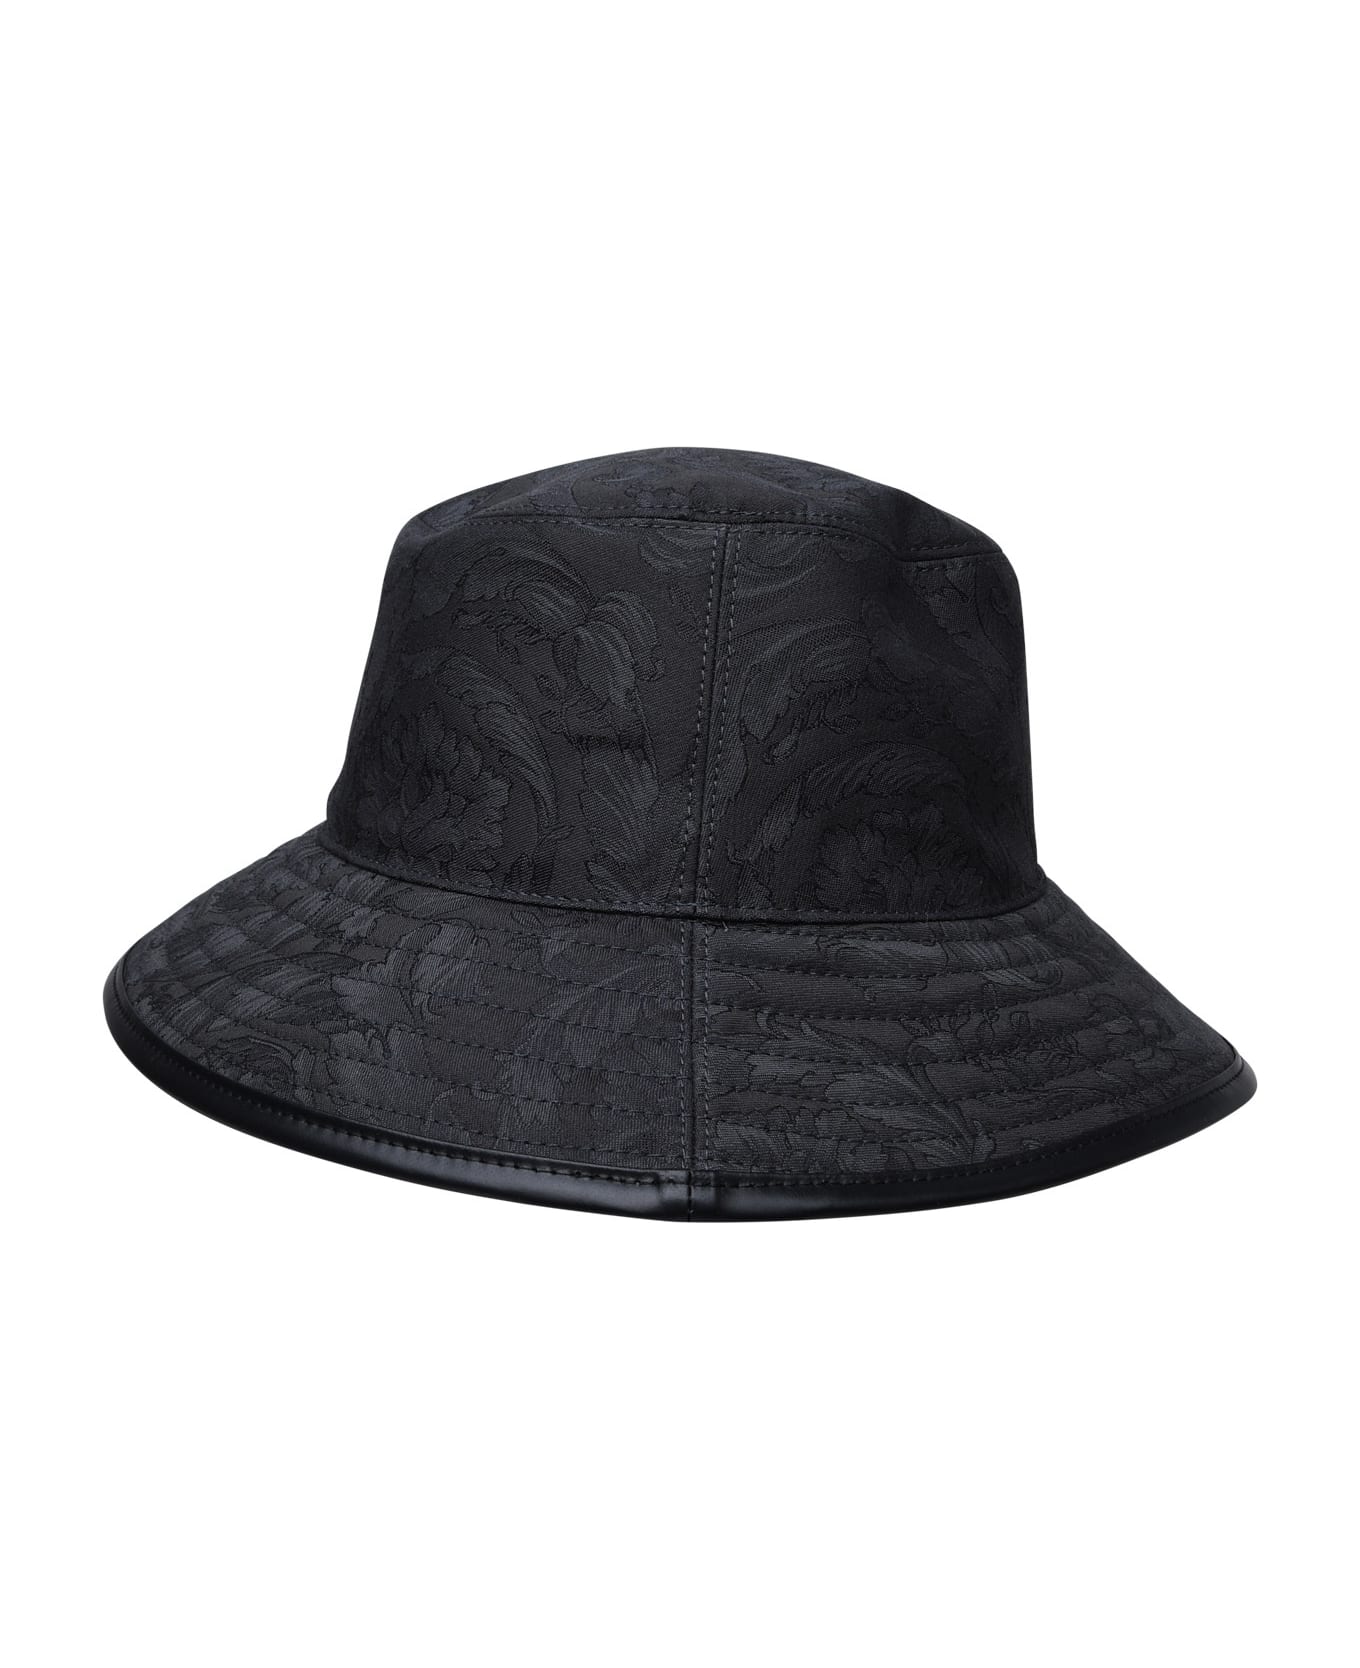 Versace Black Cotton Hat - Black